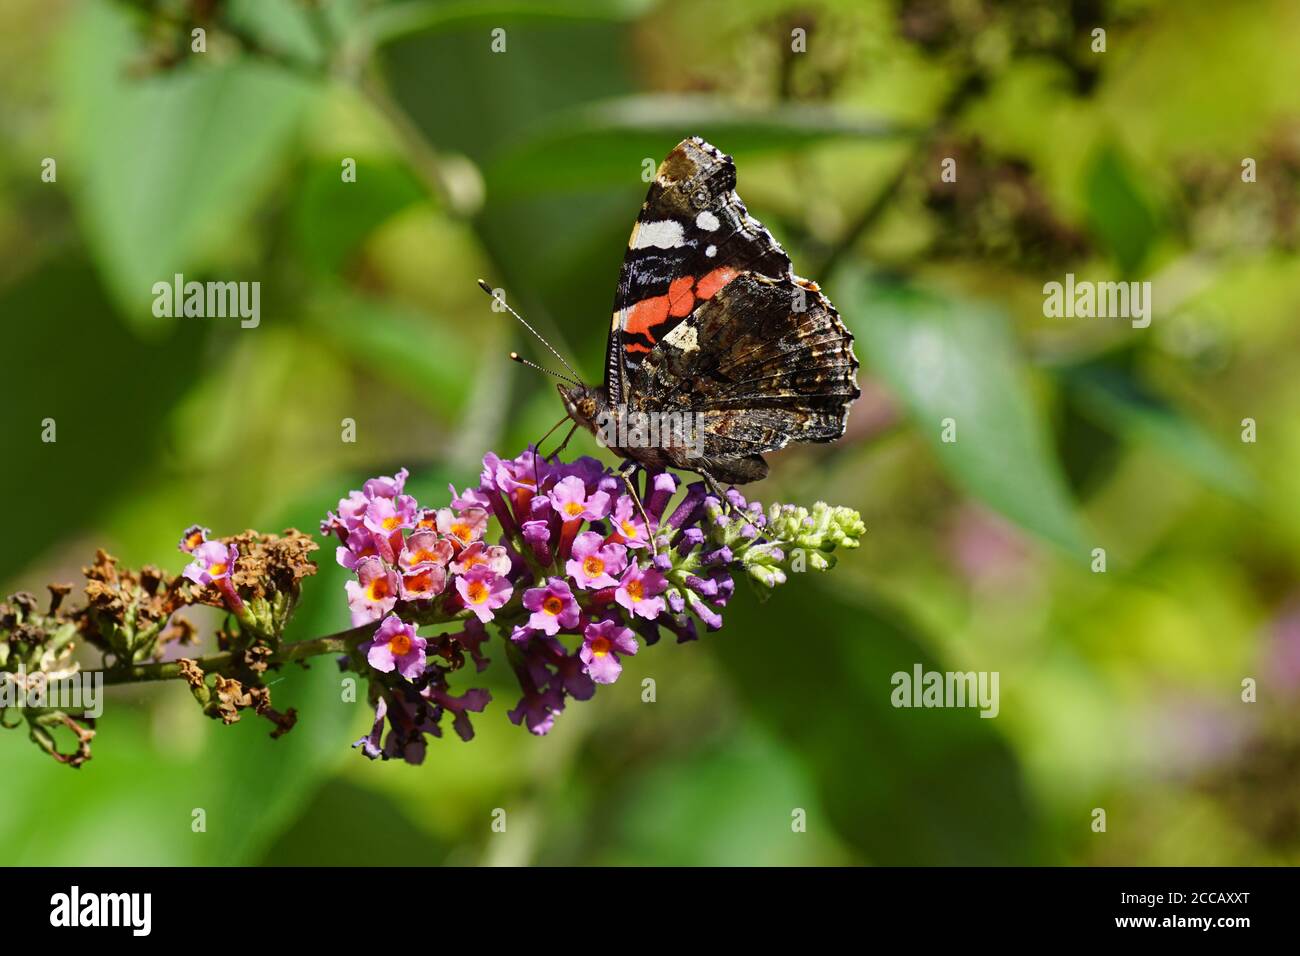 Rojo almirante o rojo admirable (Vanessa atalanta), familia Nymphalidae en las flores de un lila de verano (Buddleja davidii). En verano en un jardín holandés. Foto de stock